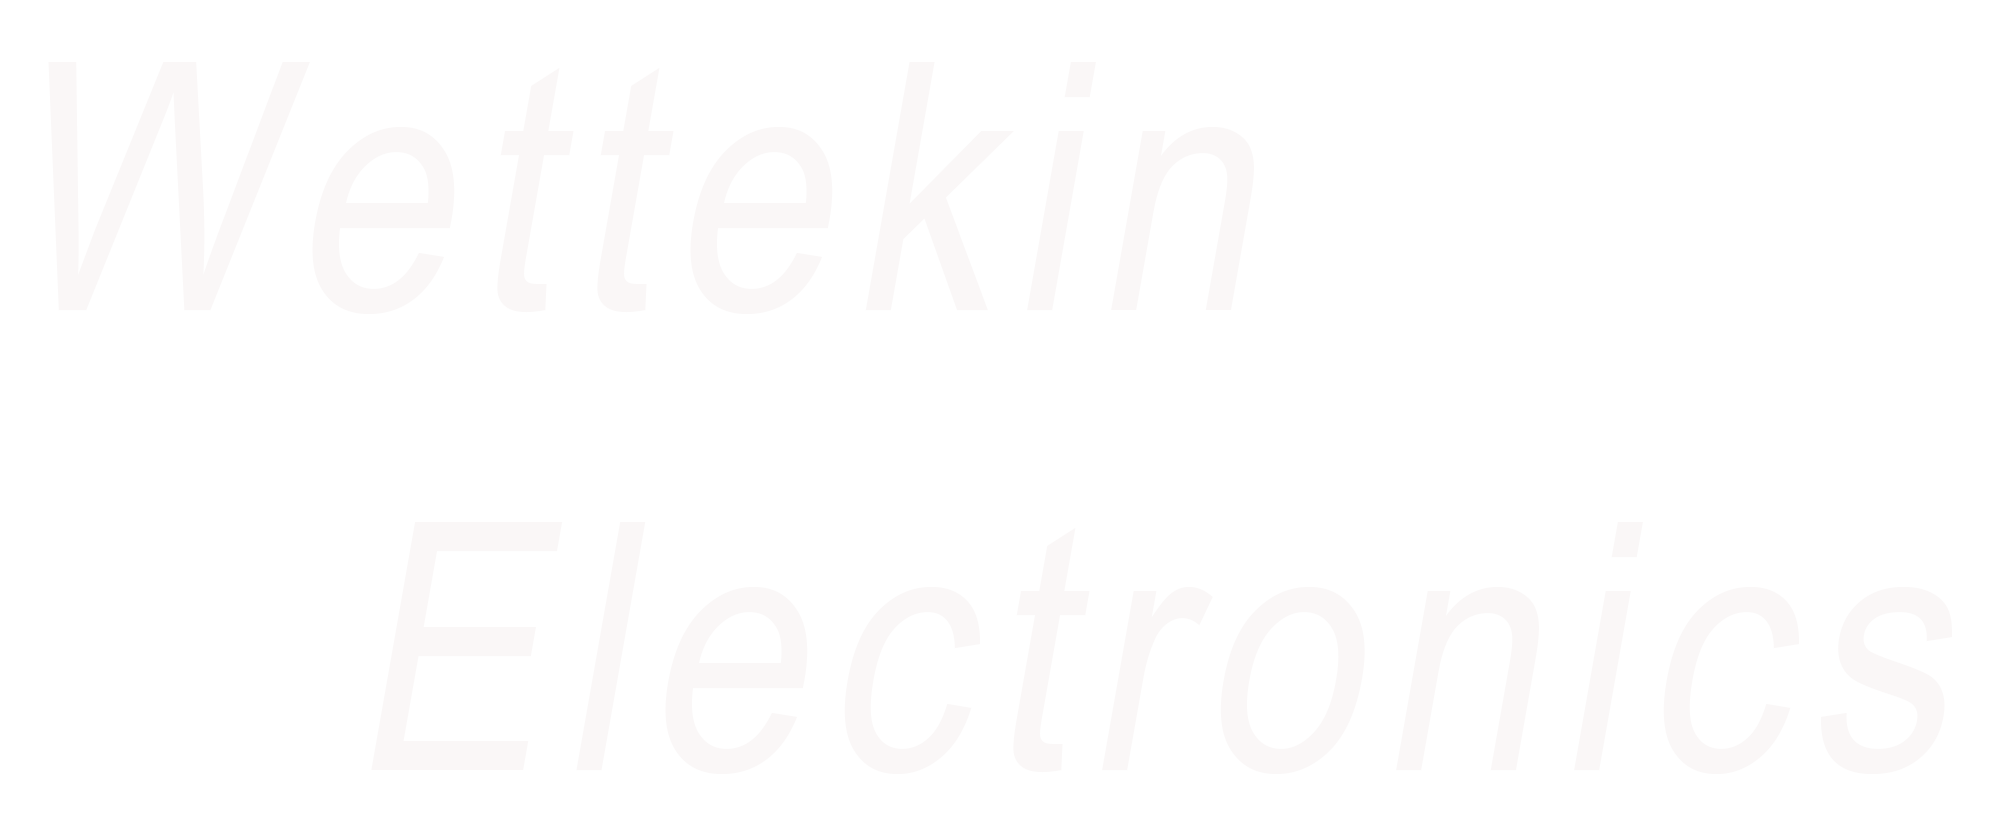 Wettekin Electronics